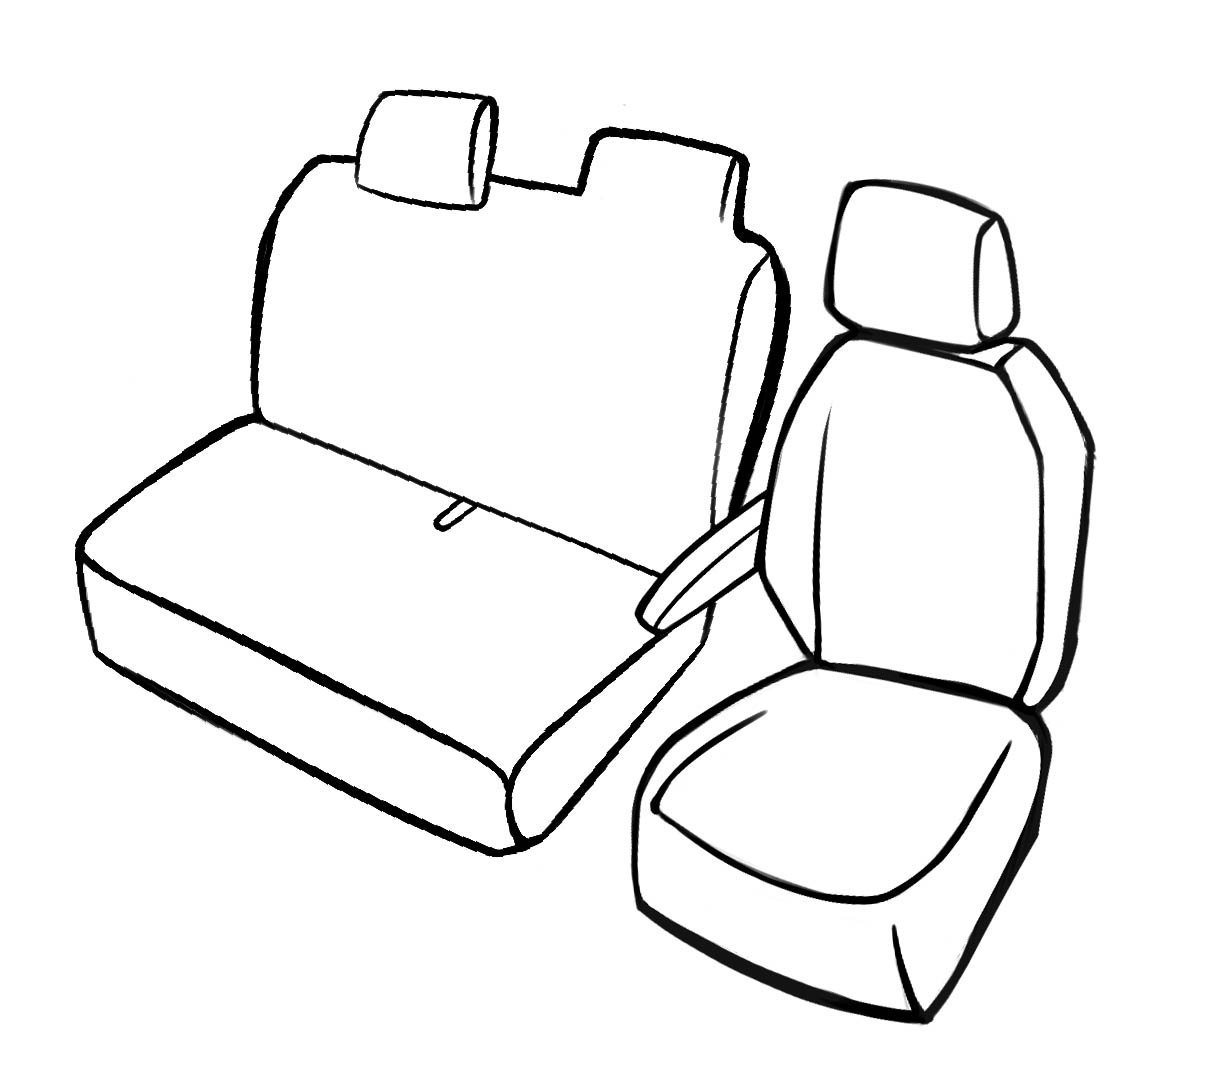 Premium Housse de siège pour Citroen Jumper II 04/2006- auj., 1 housse de siège simple avant + housse d'accoudoir, 1 couverture de banc double